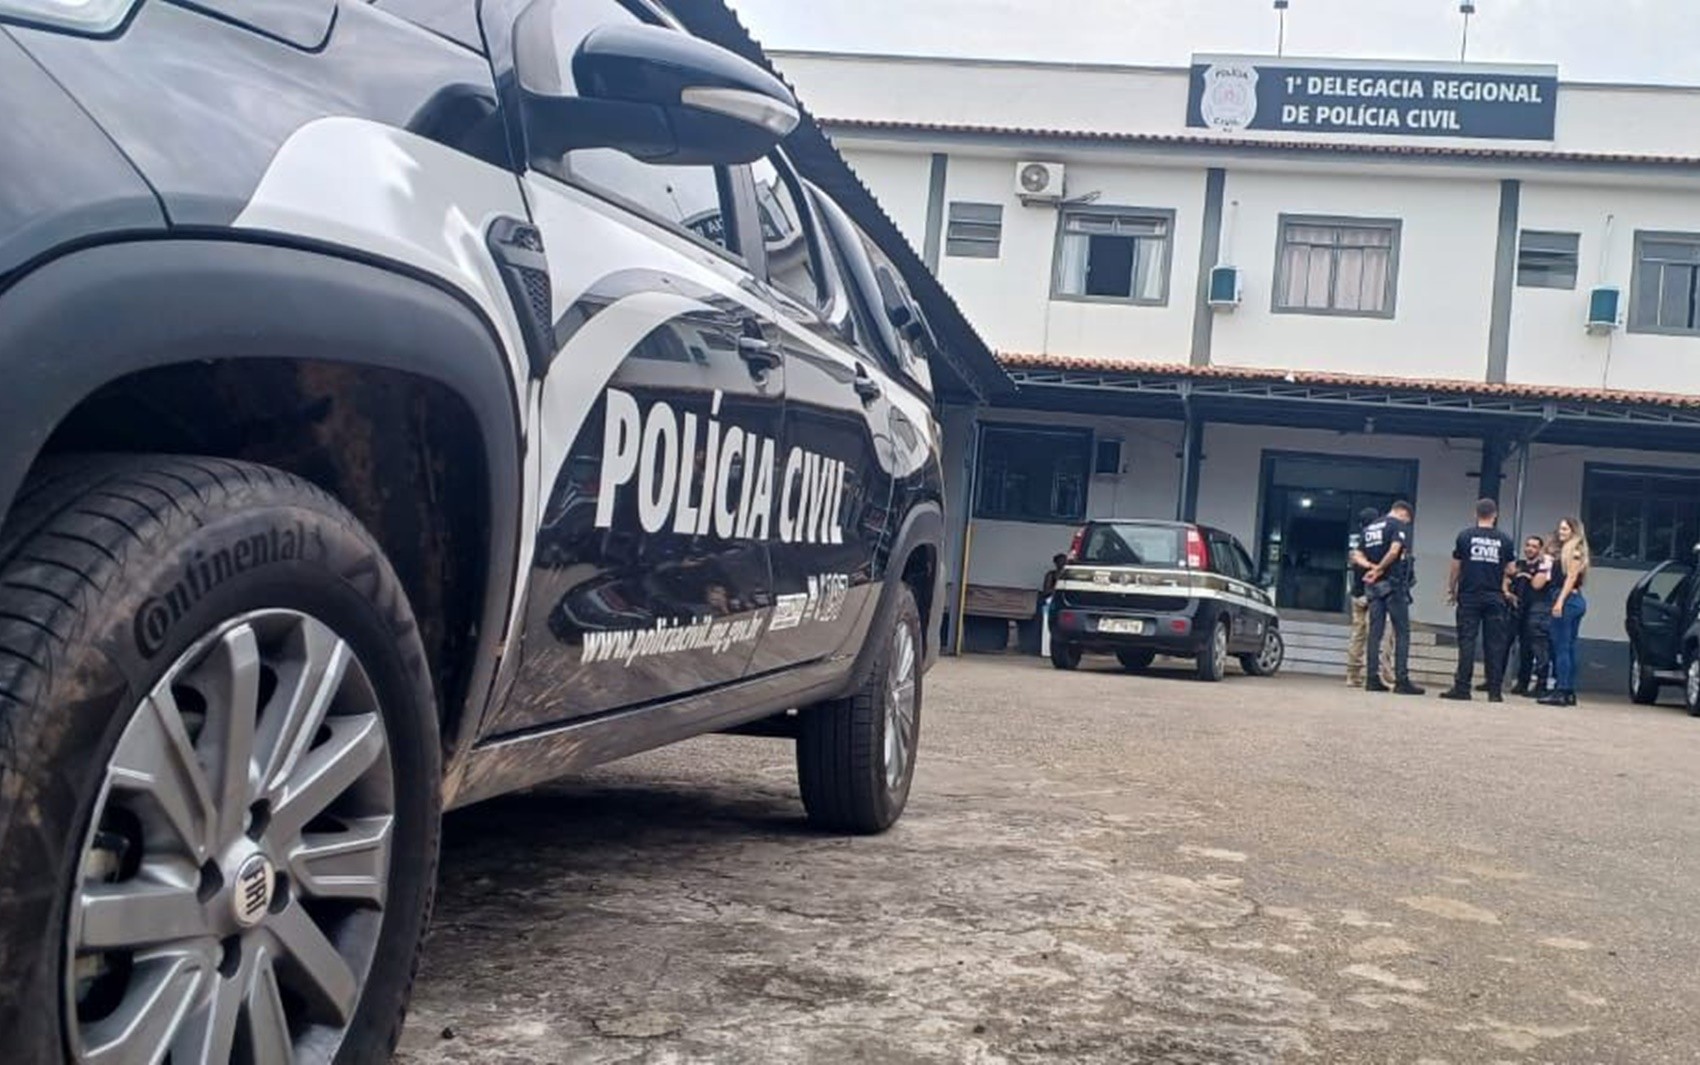 Polícia Civil prende cinco pessoas durante operação de combate a crimes violentos em Lavras, MG